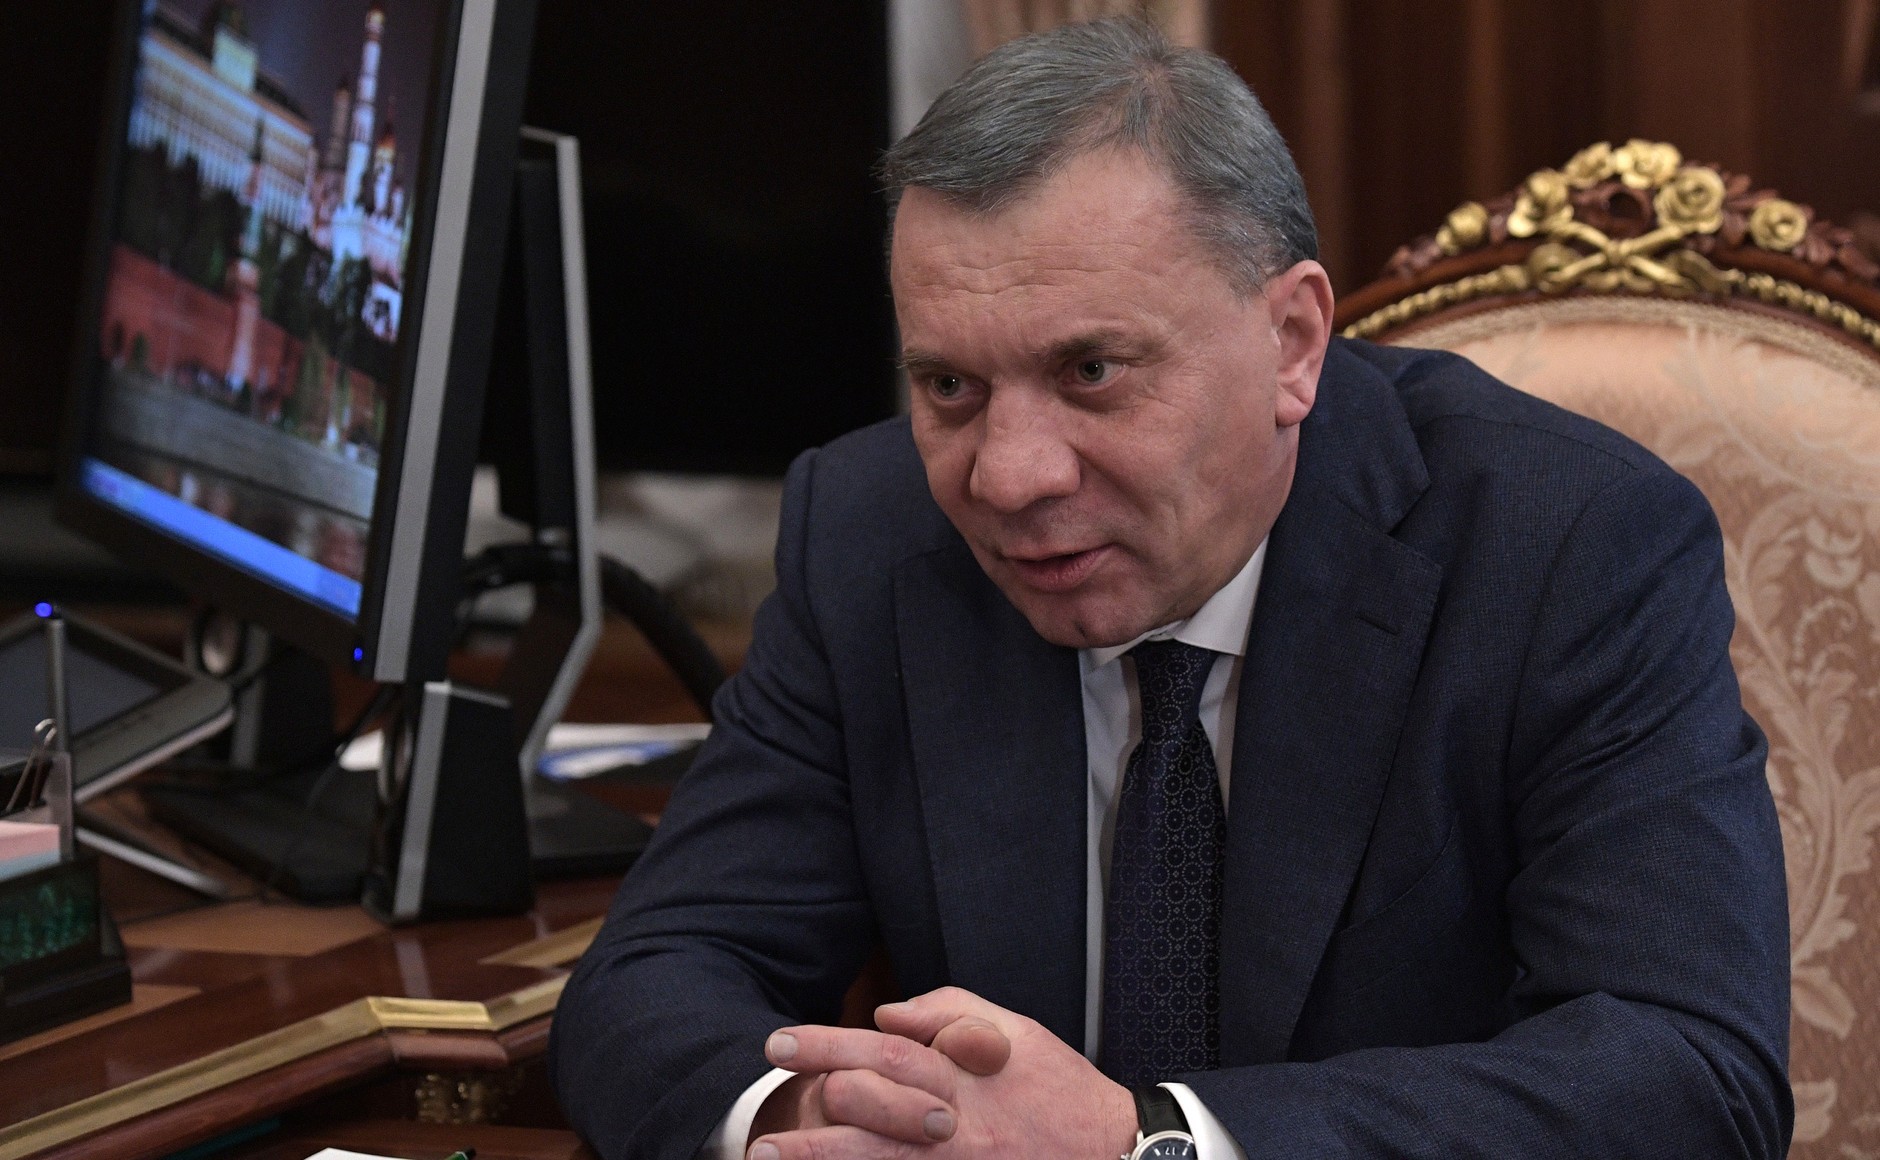 Dailystorm - Вице-премьер Борисов может уйти в отставку и возглавить «Роскосмос»